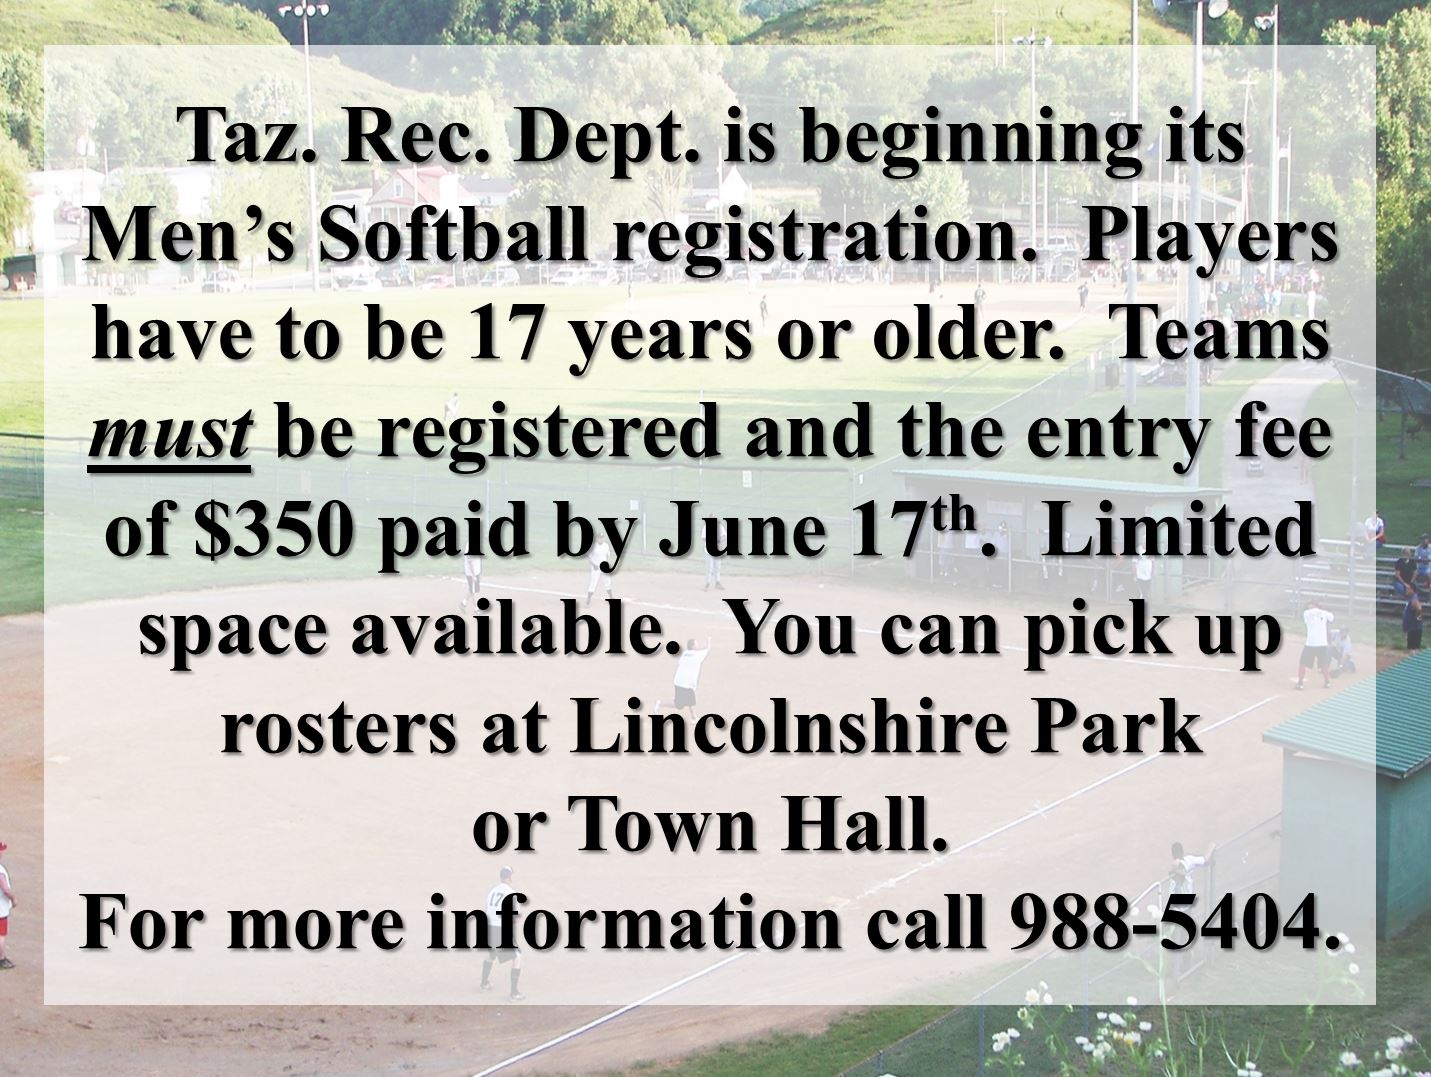 Men’s Softball Registration – Deadline June 17